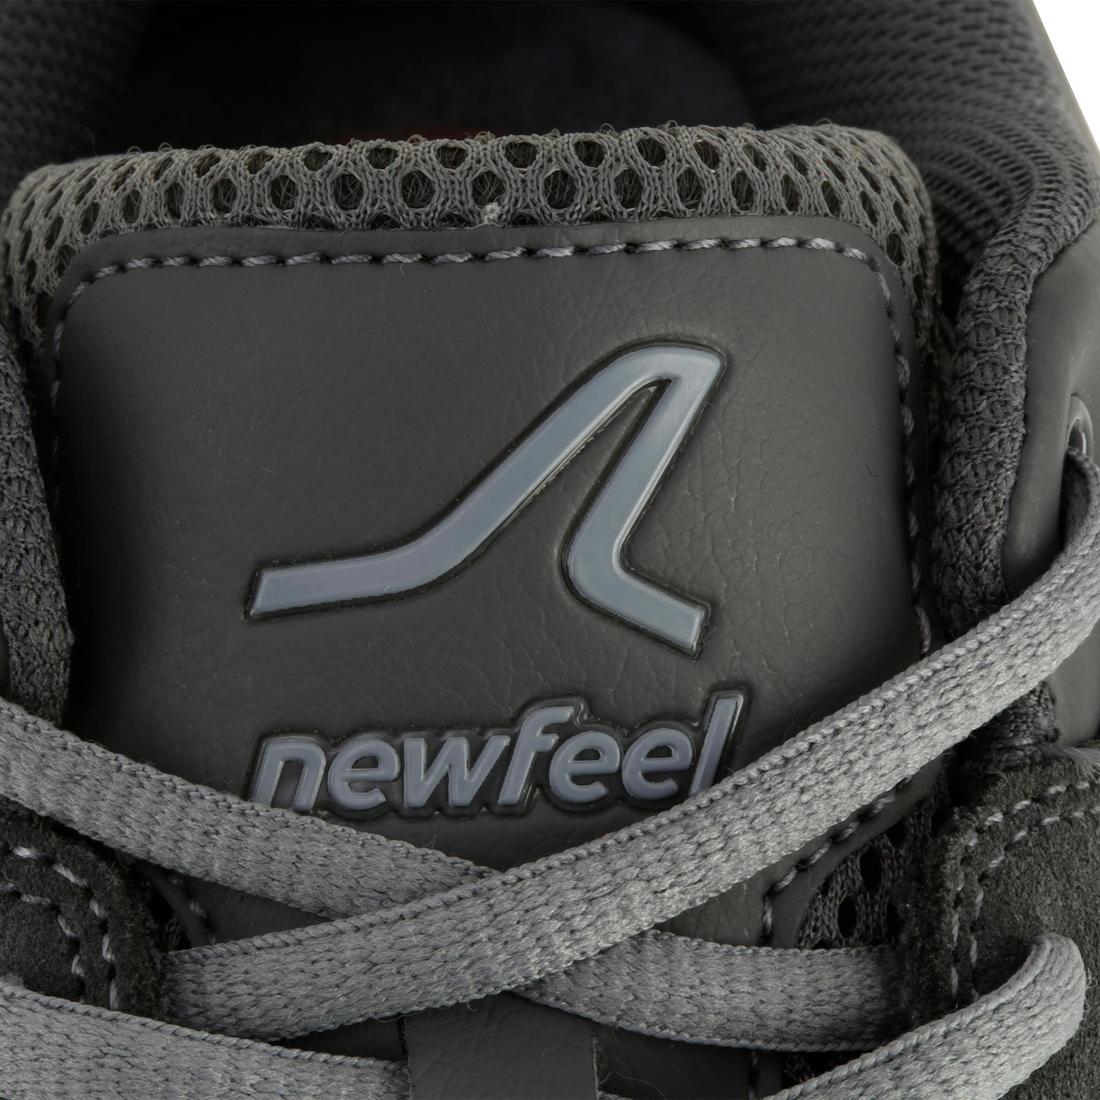 NEWFEEL(ニューフィール) フィットネス ウォーキング シューズ レザー HW540 メンズ